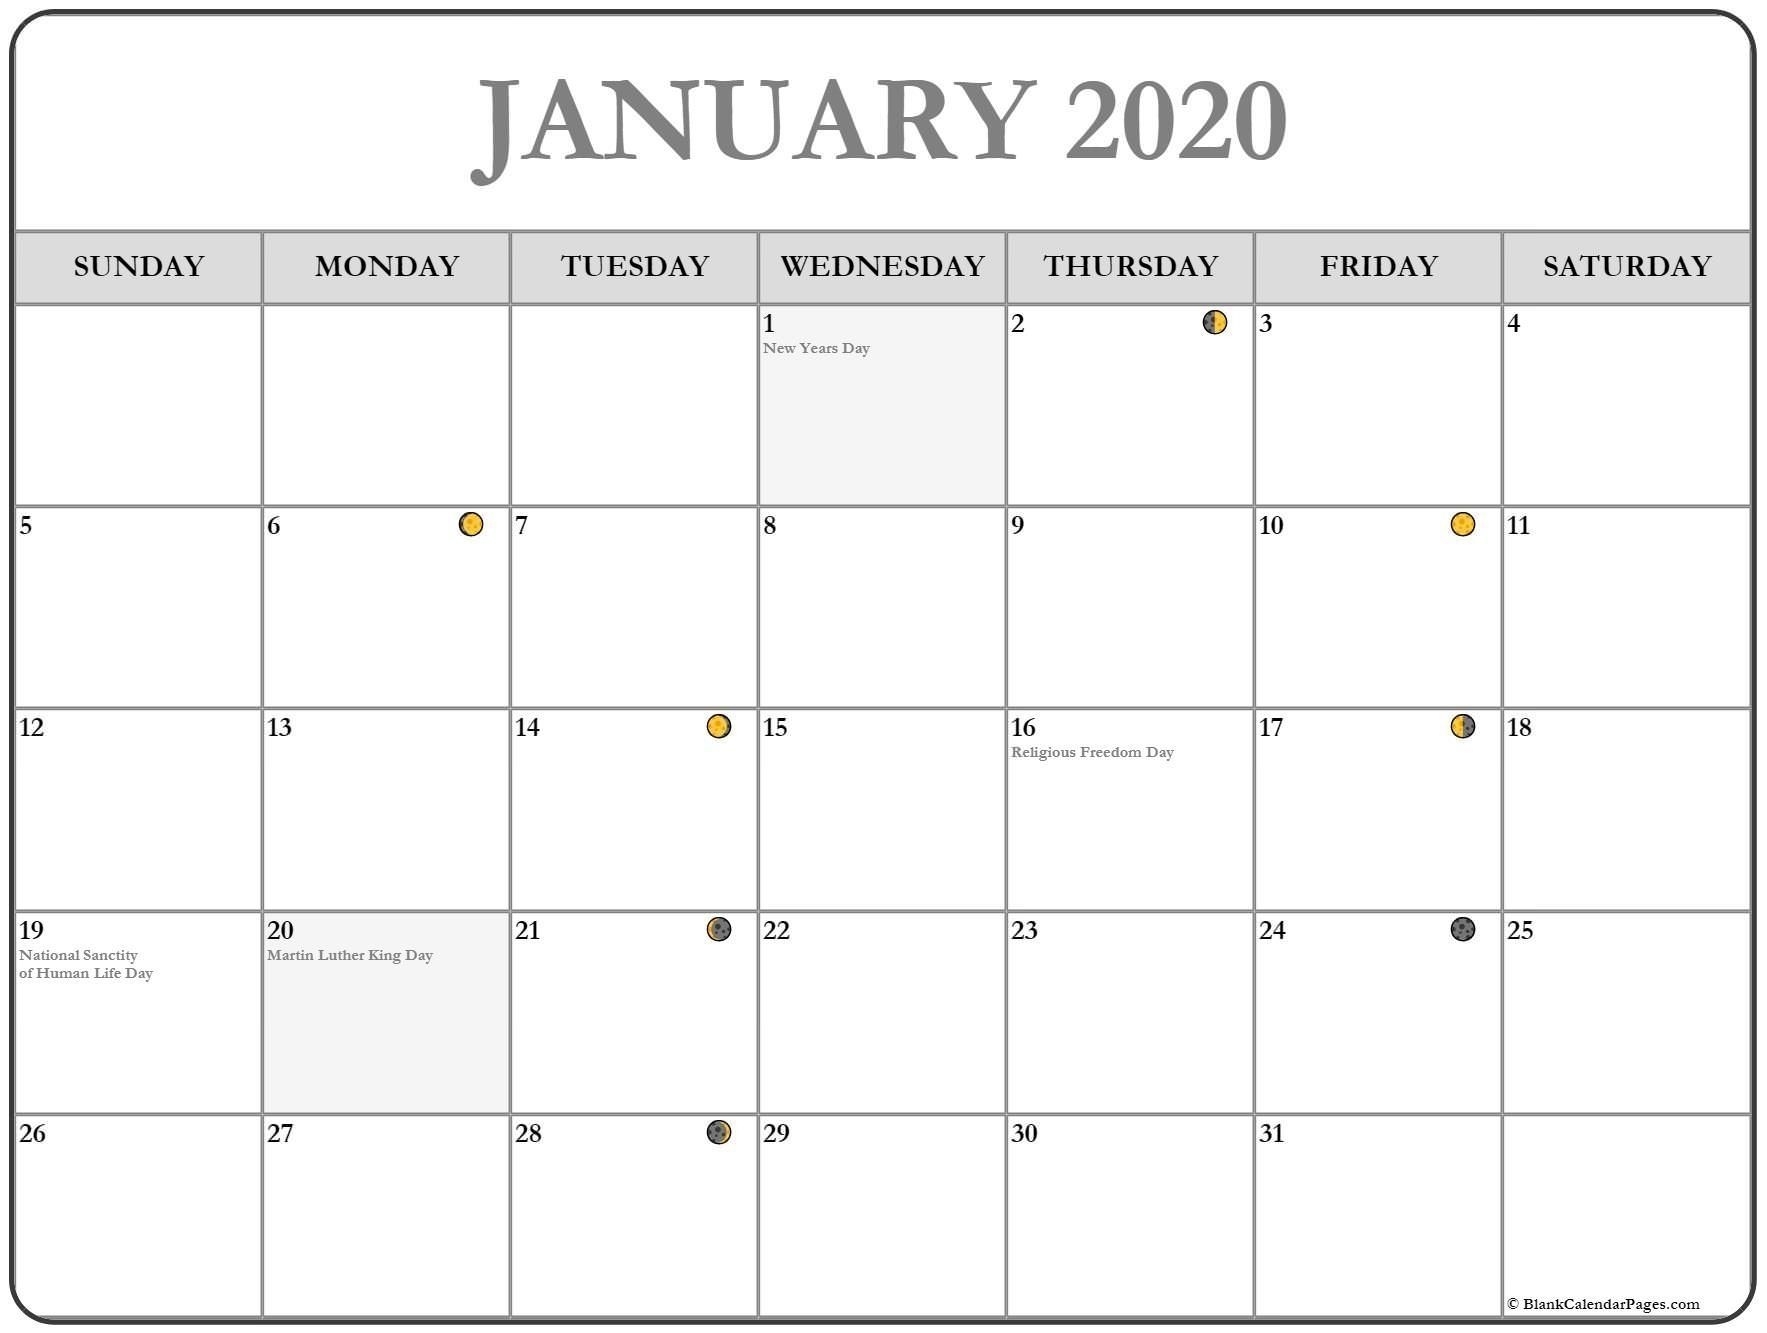 New Full Moon Phases For January 2020 Lunar Calendar